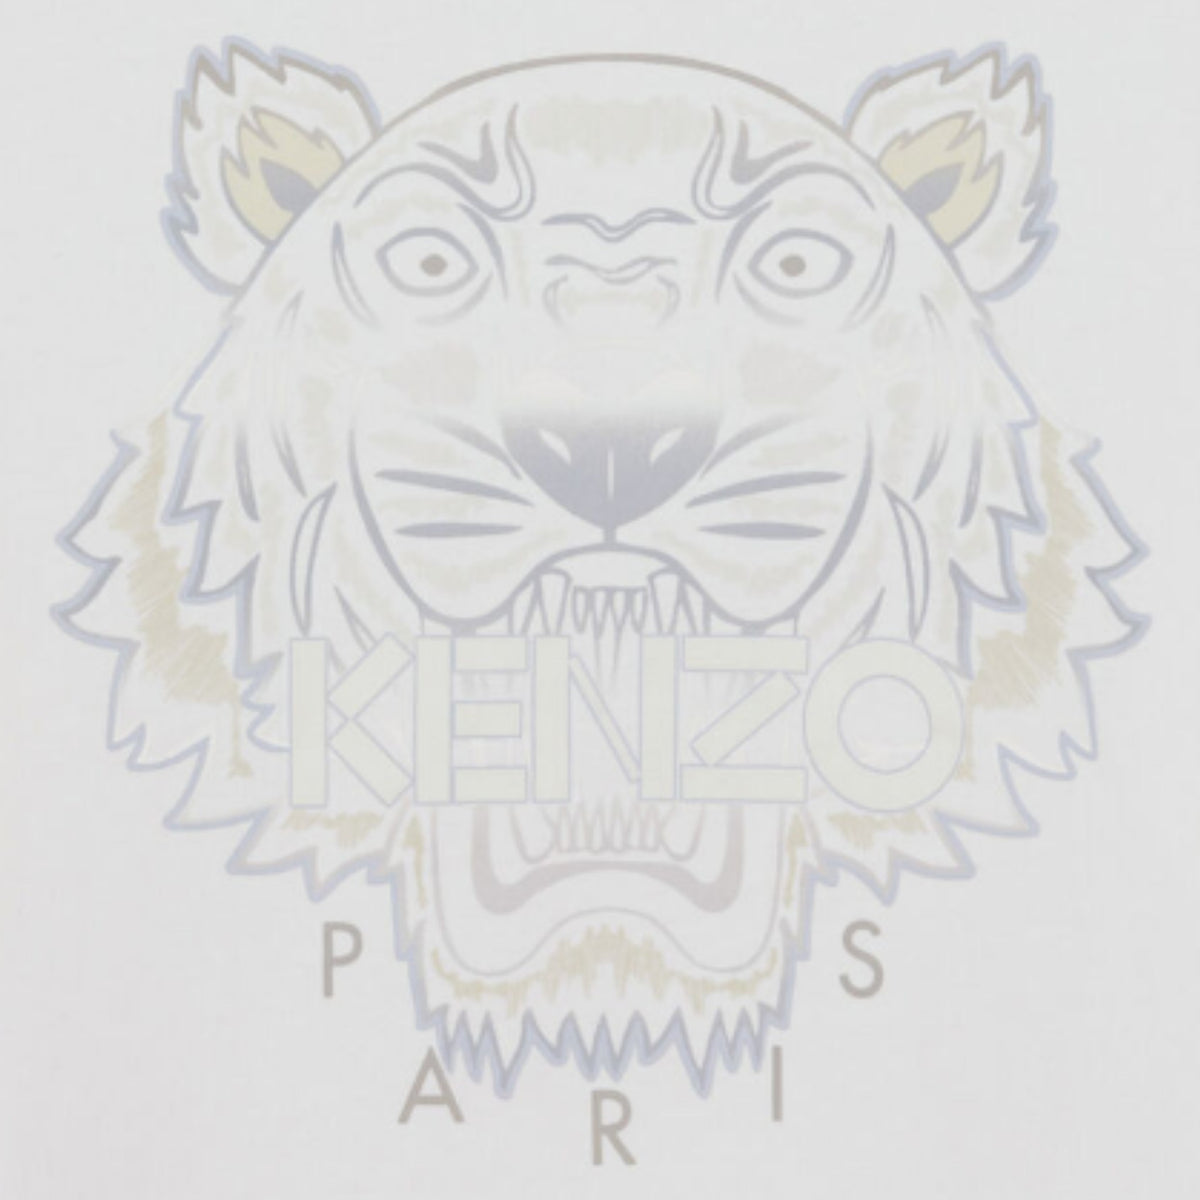 Kenzo Men's Gradient Oversize Tiger T-Shirt